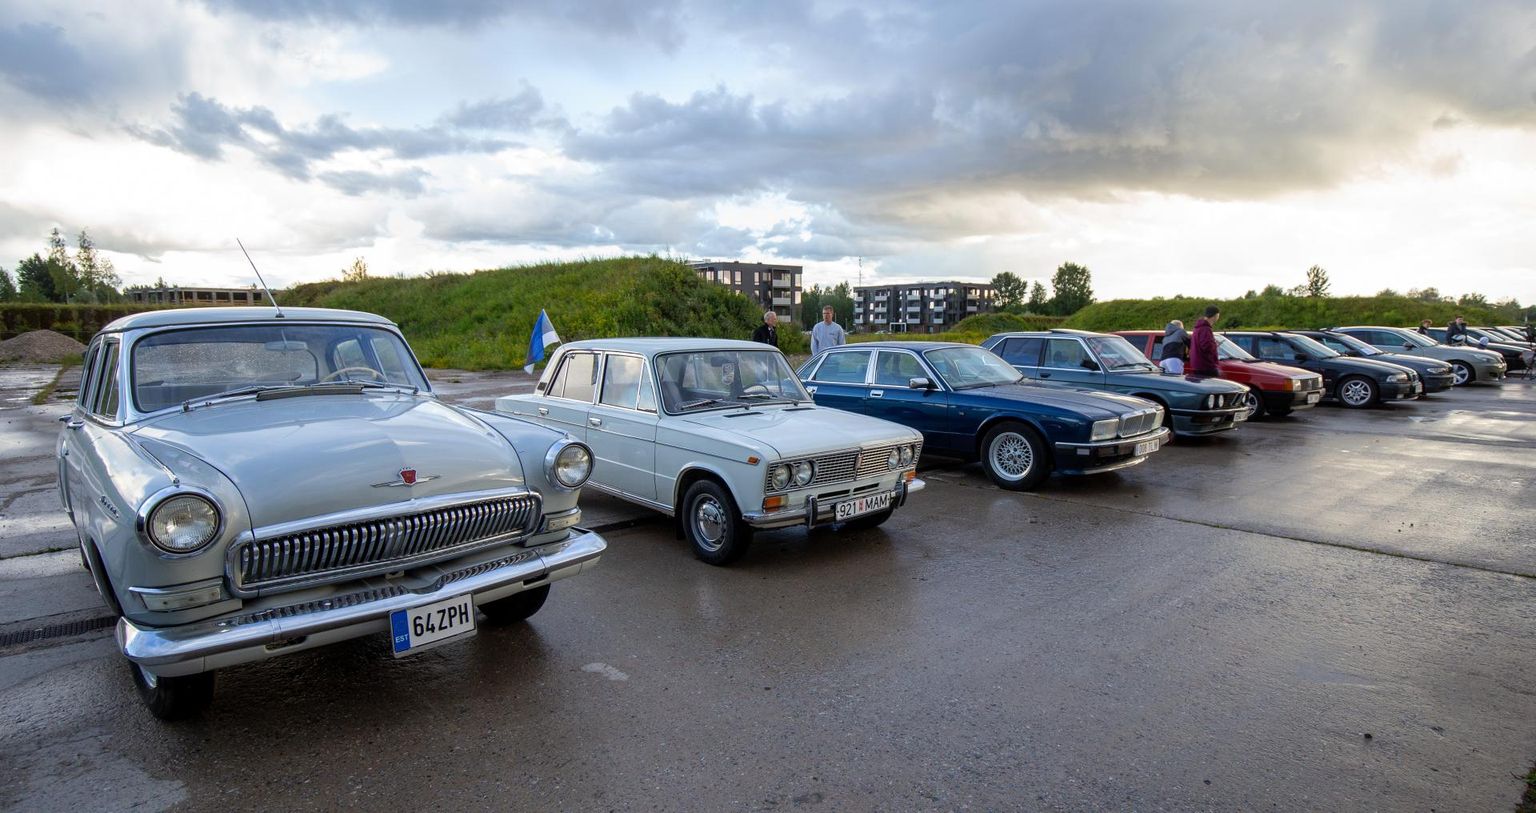 Neljapäeval Raadil korraldatud hobiautode kogunemisele Cars & Coffee sõitis kohale enam kui 250 eri marki ja eri väljalaske­aastaga autot.